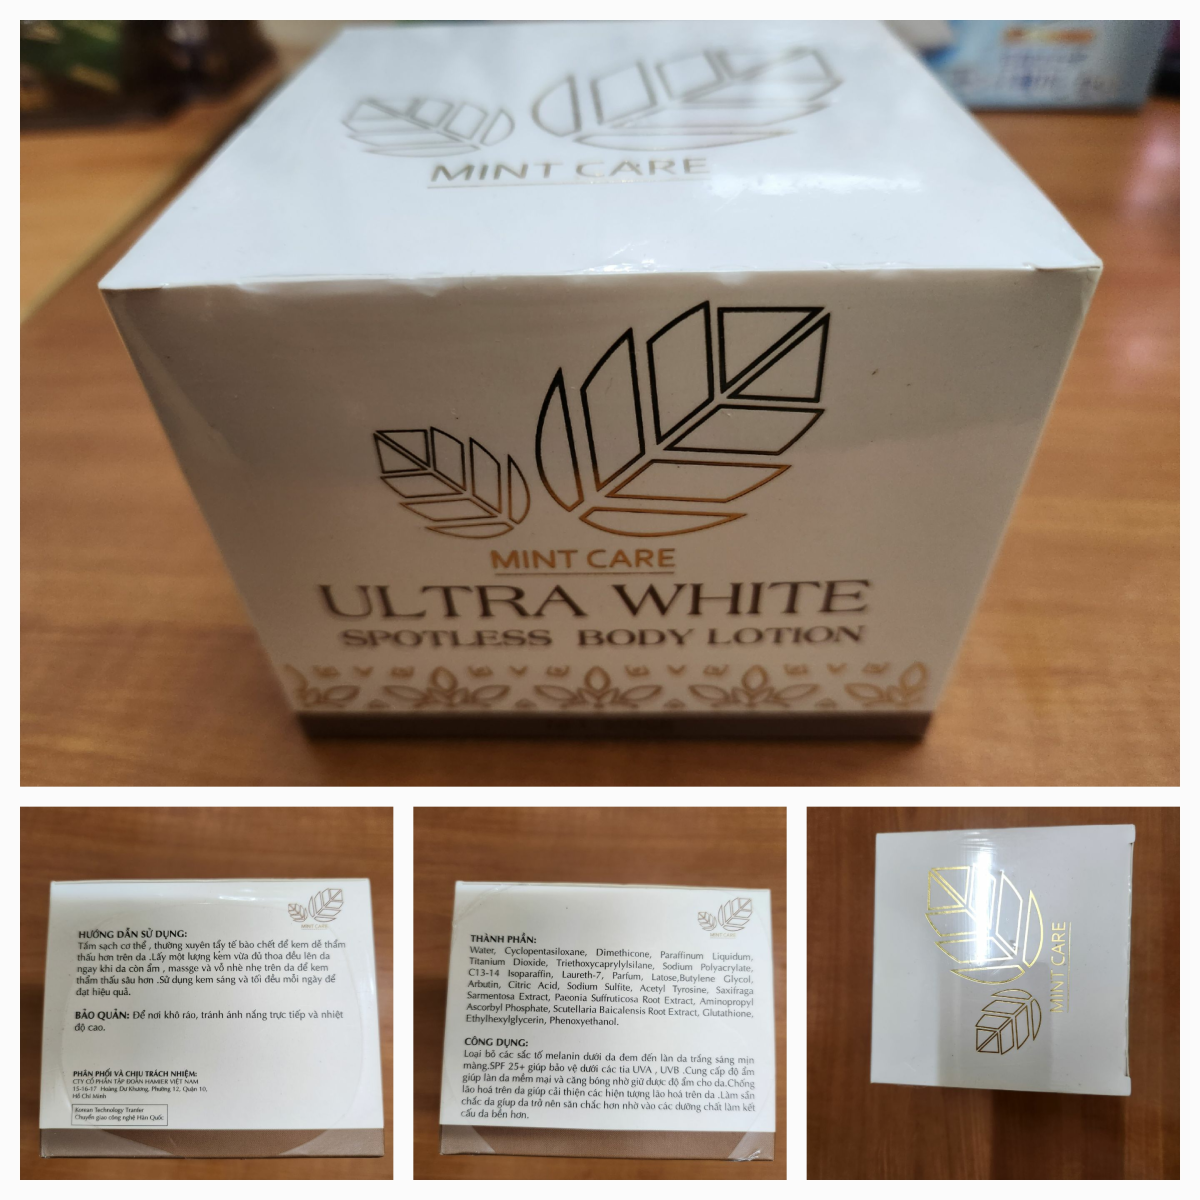 Trên bao bì sản phẩm Ultra White Spotless Body Lotion ghi rõ “Công ty cổ phần Tập đoàn Hamier Việt Nam, địa chỉ 15-16-17 Hoàng Dư Khương, phường 12, quận 10”.